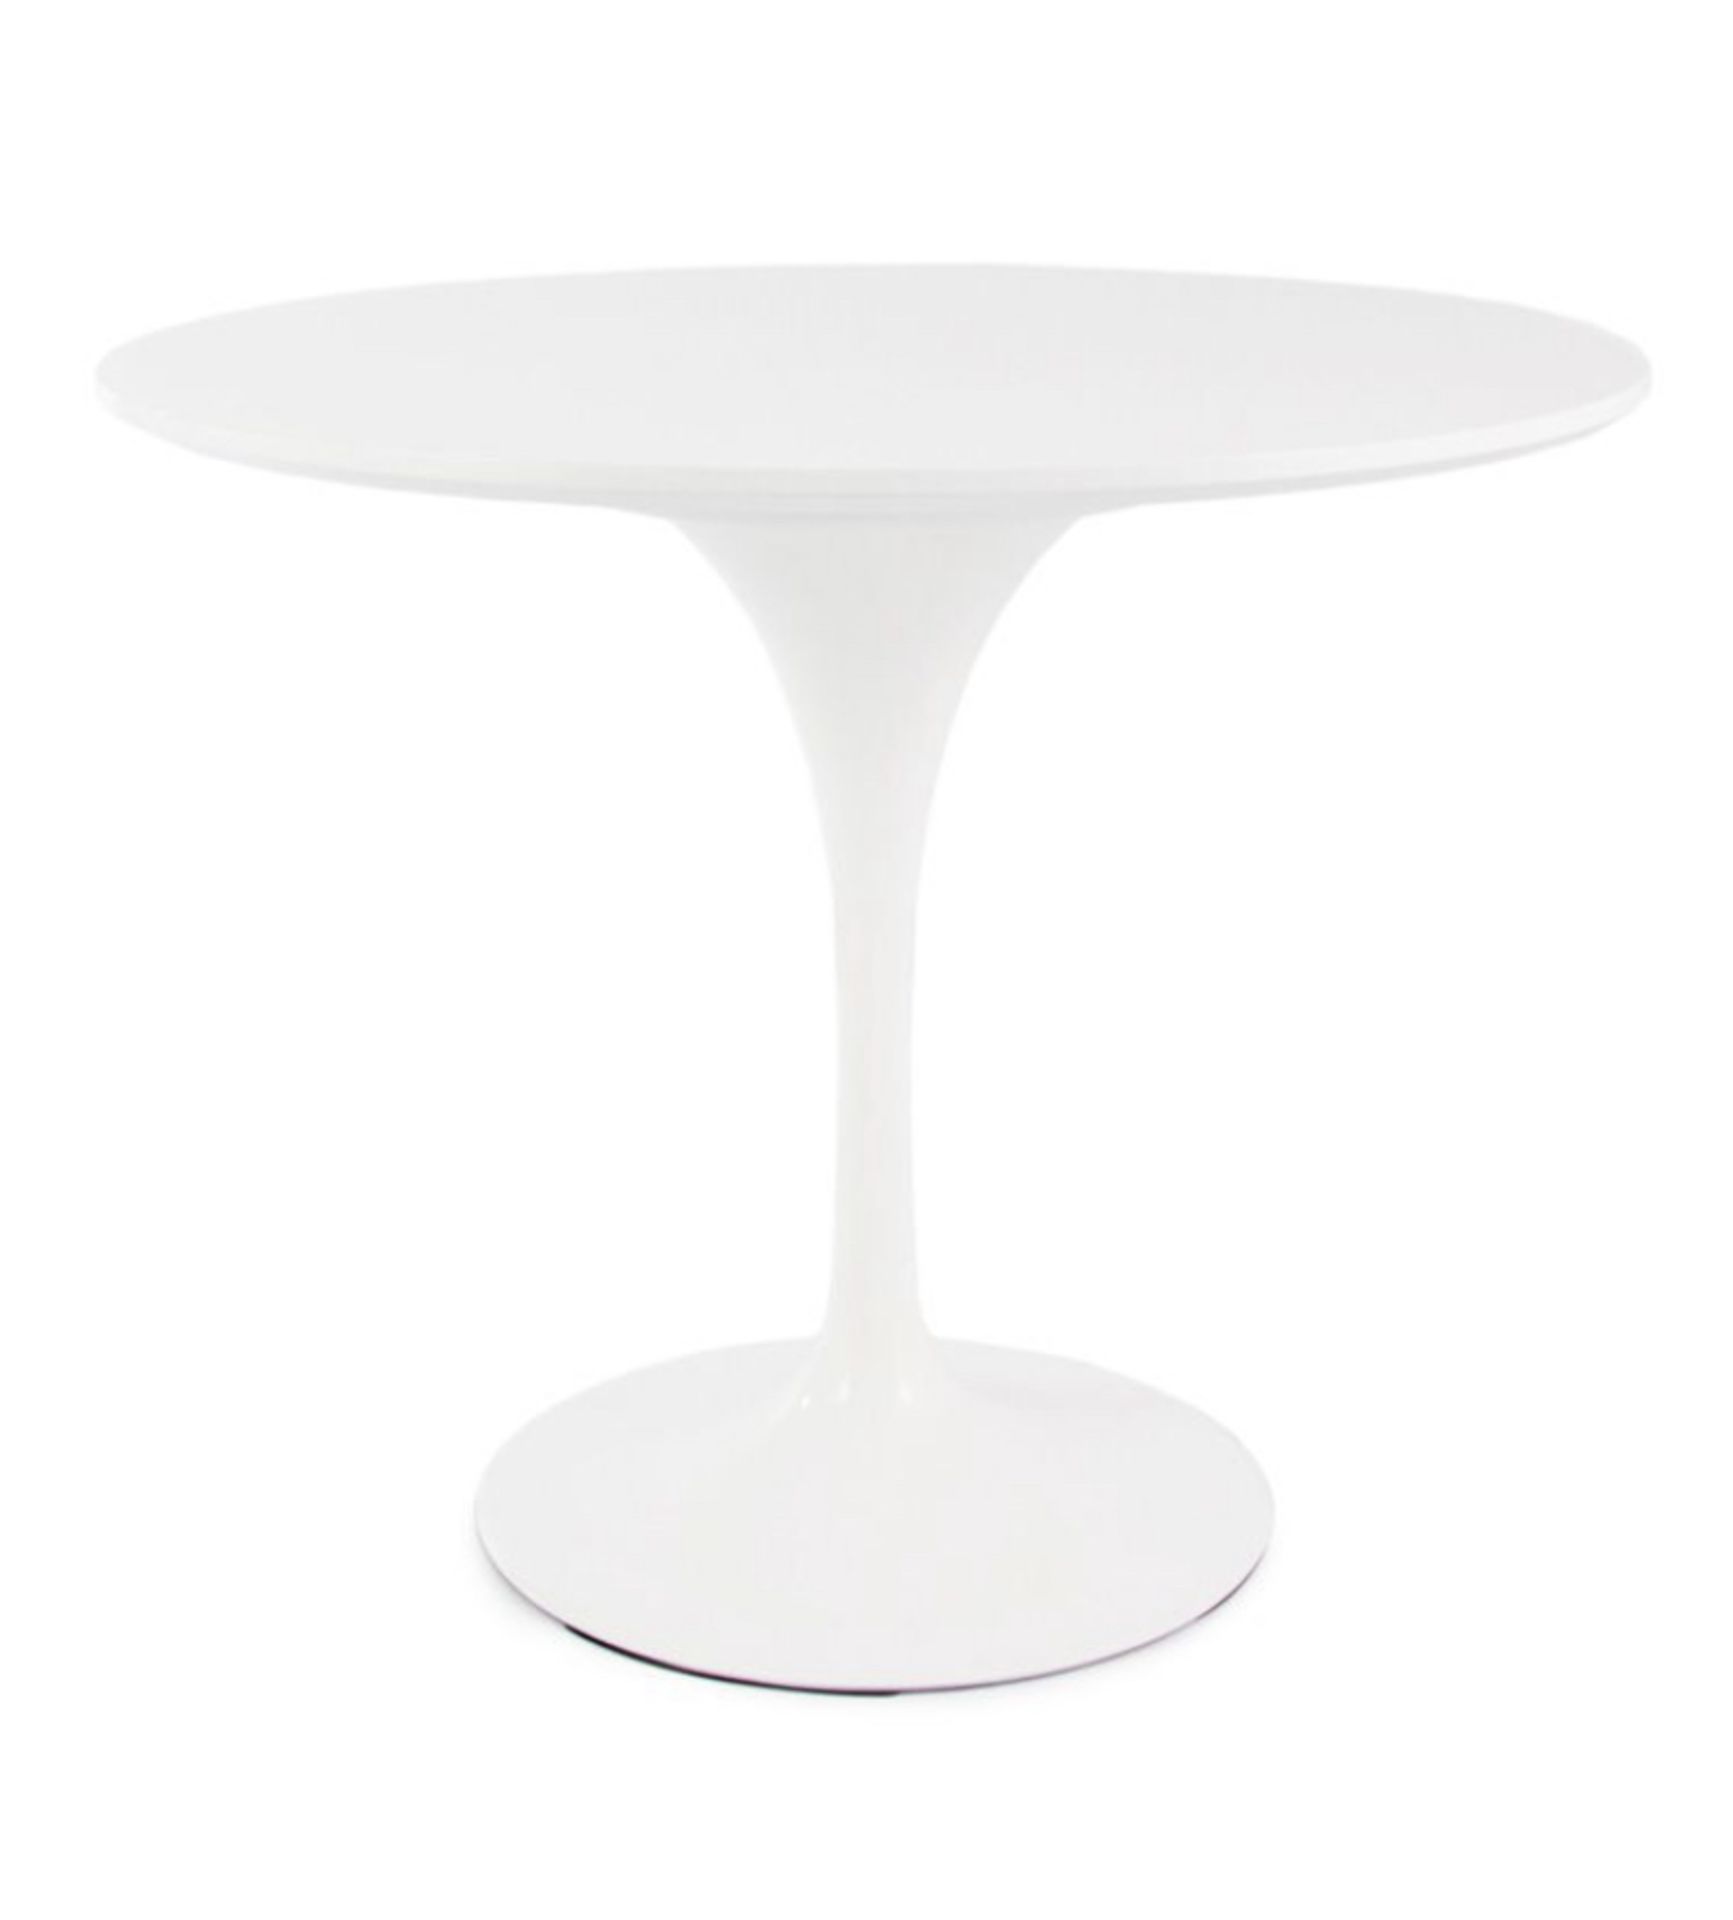 Tulip Eero Saarinen Inspired Table, 90cm - NEW - Image 4 of 9